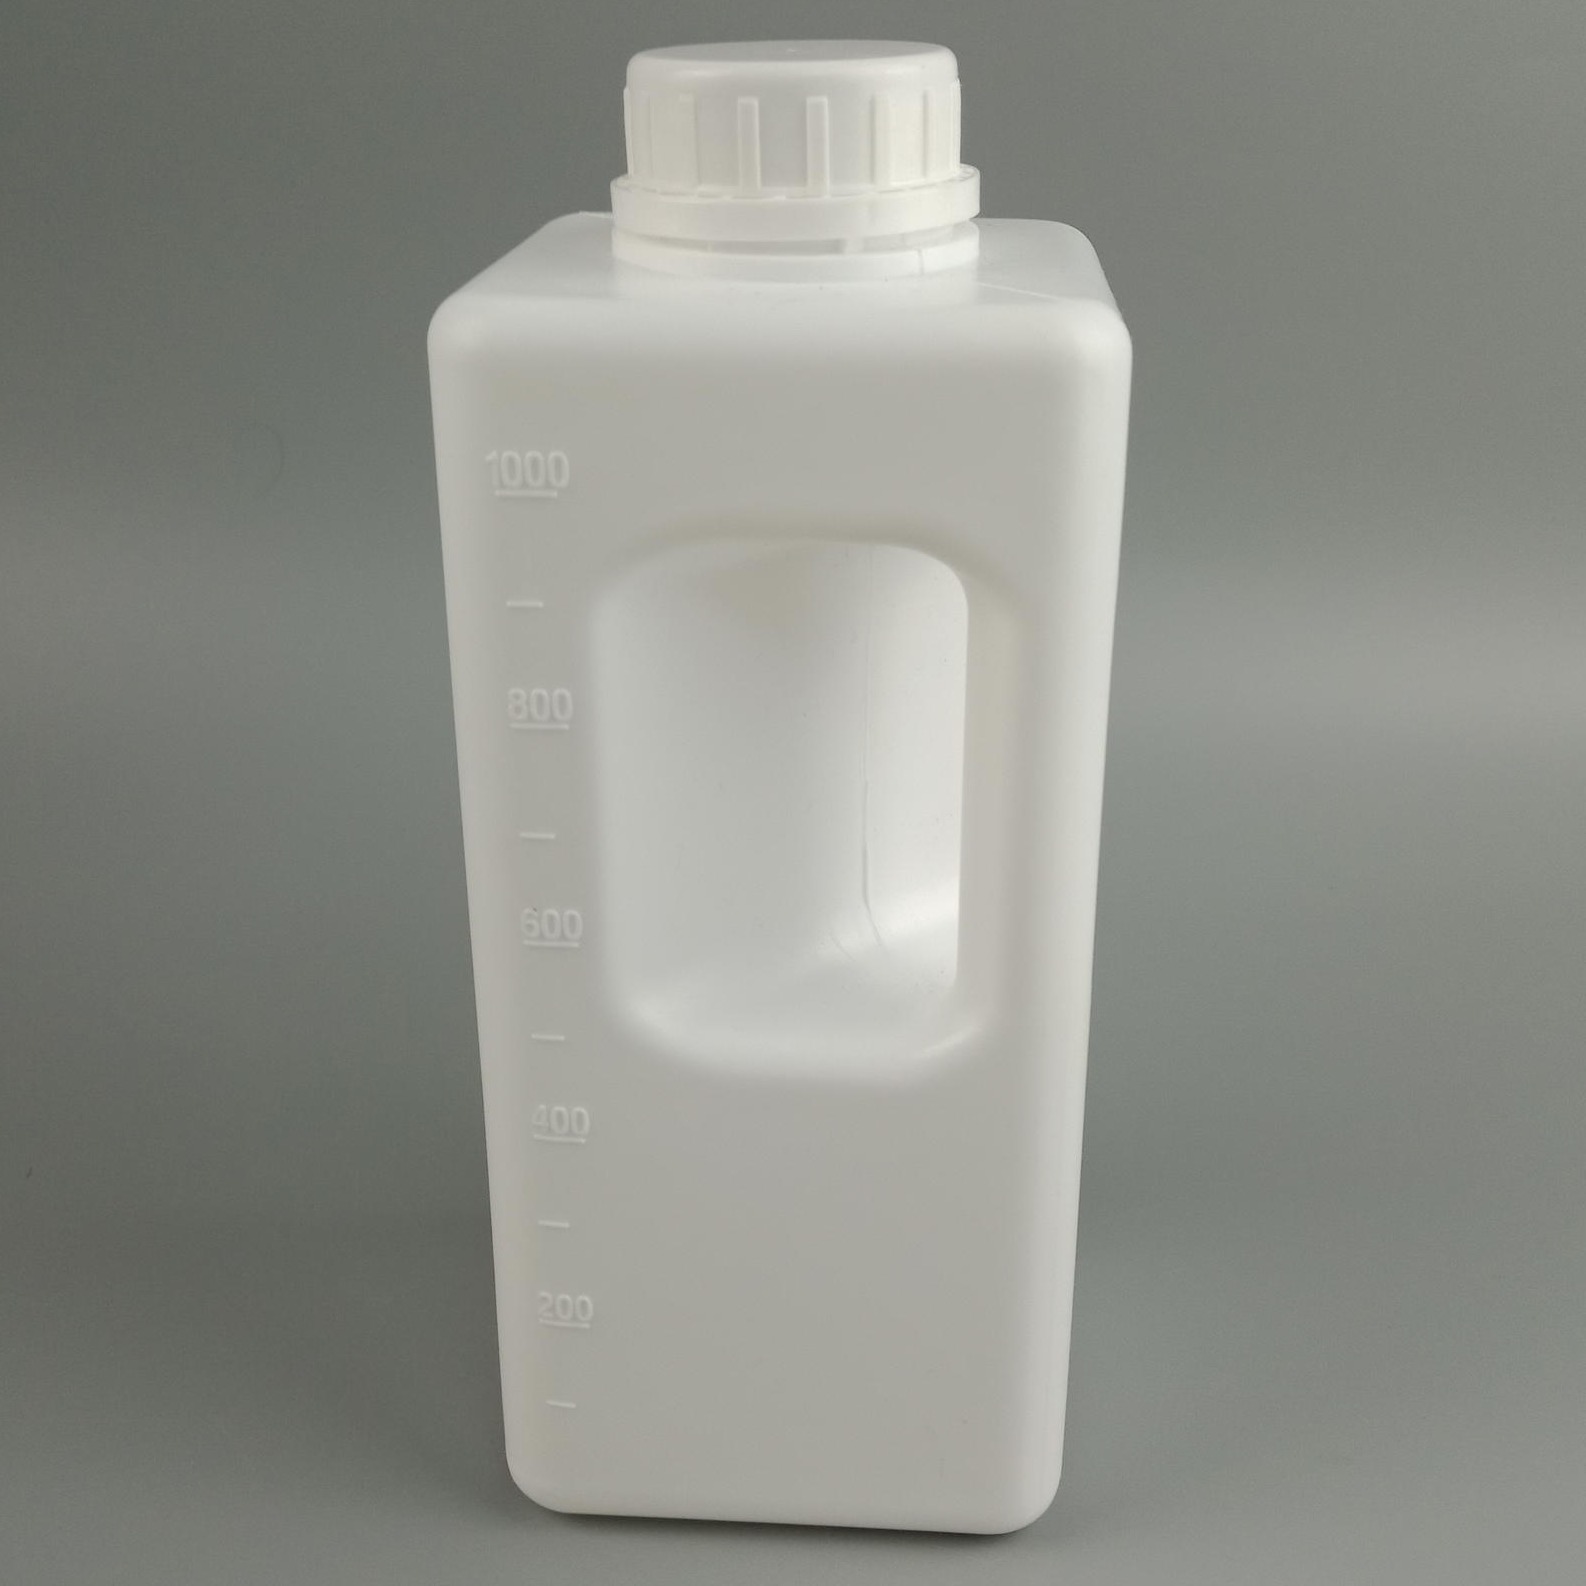 钜名供应 1000ml 农药塑料瓶 1升方形洗衣液瓶子 化工分装瓶 包装塑料瓶子  外型设计 模具生产 欢迎采购